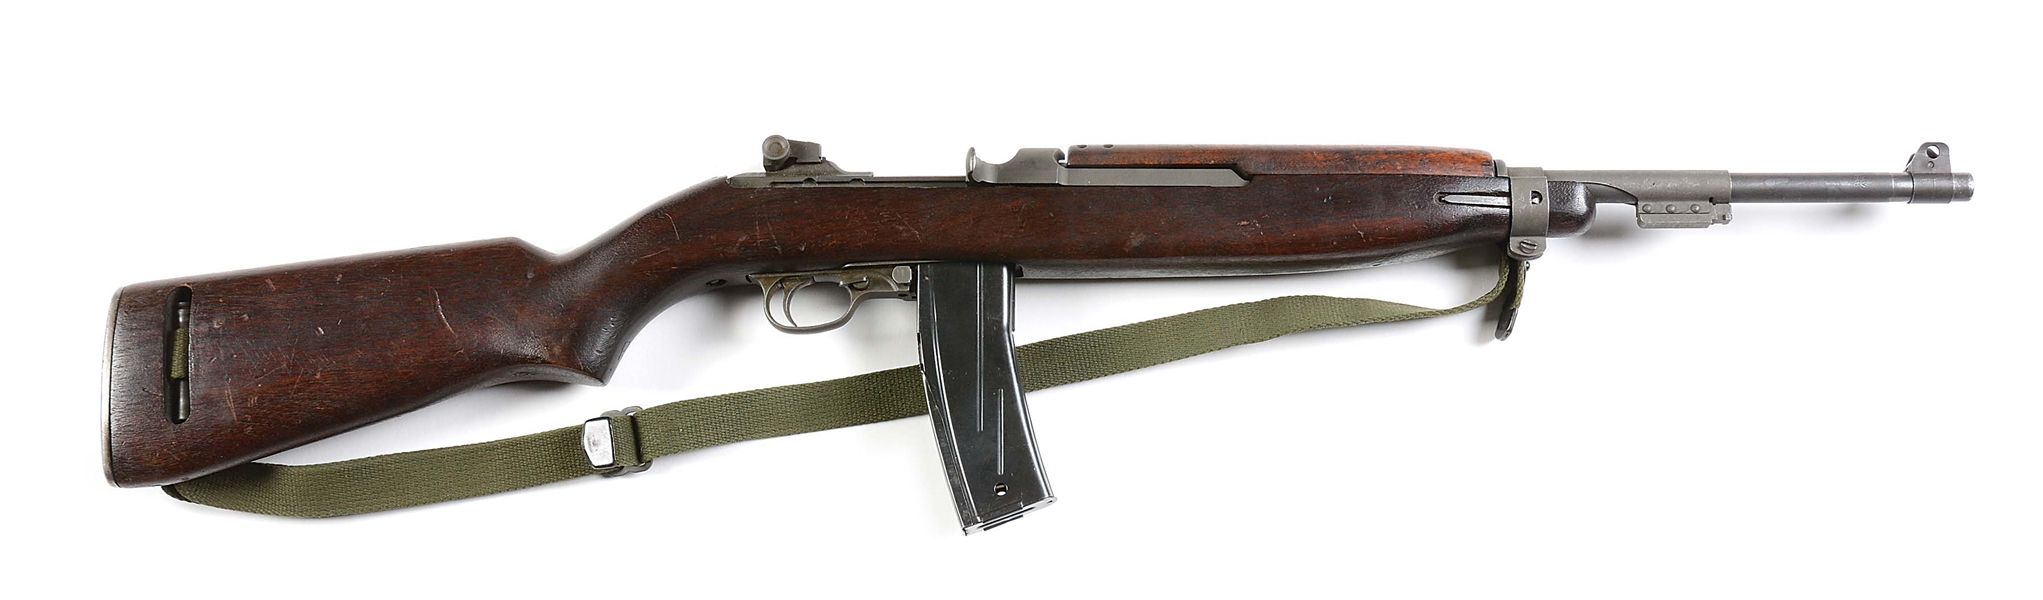 (N) FINE WORLD WAR II VINTAGE MANUFACTURED INLAND M2 CARBINE MACHINE GUN (PRE-86 DEALER SAMPLE).